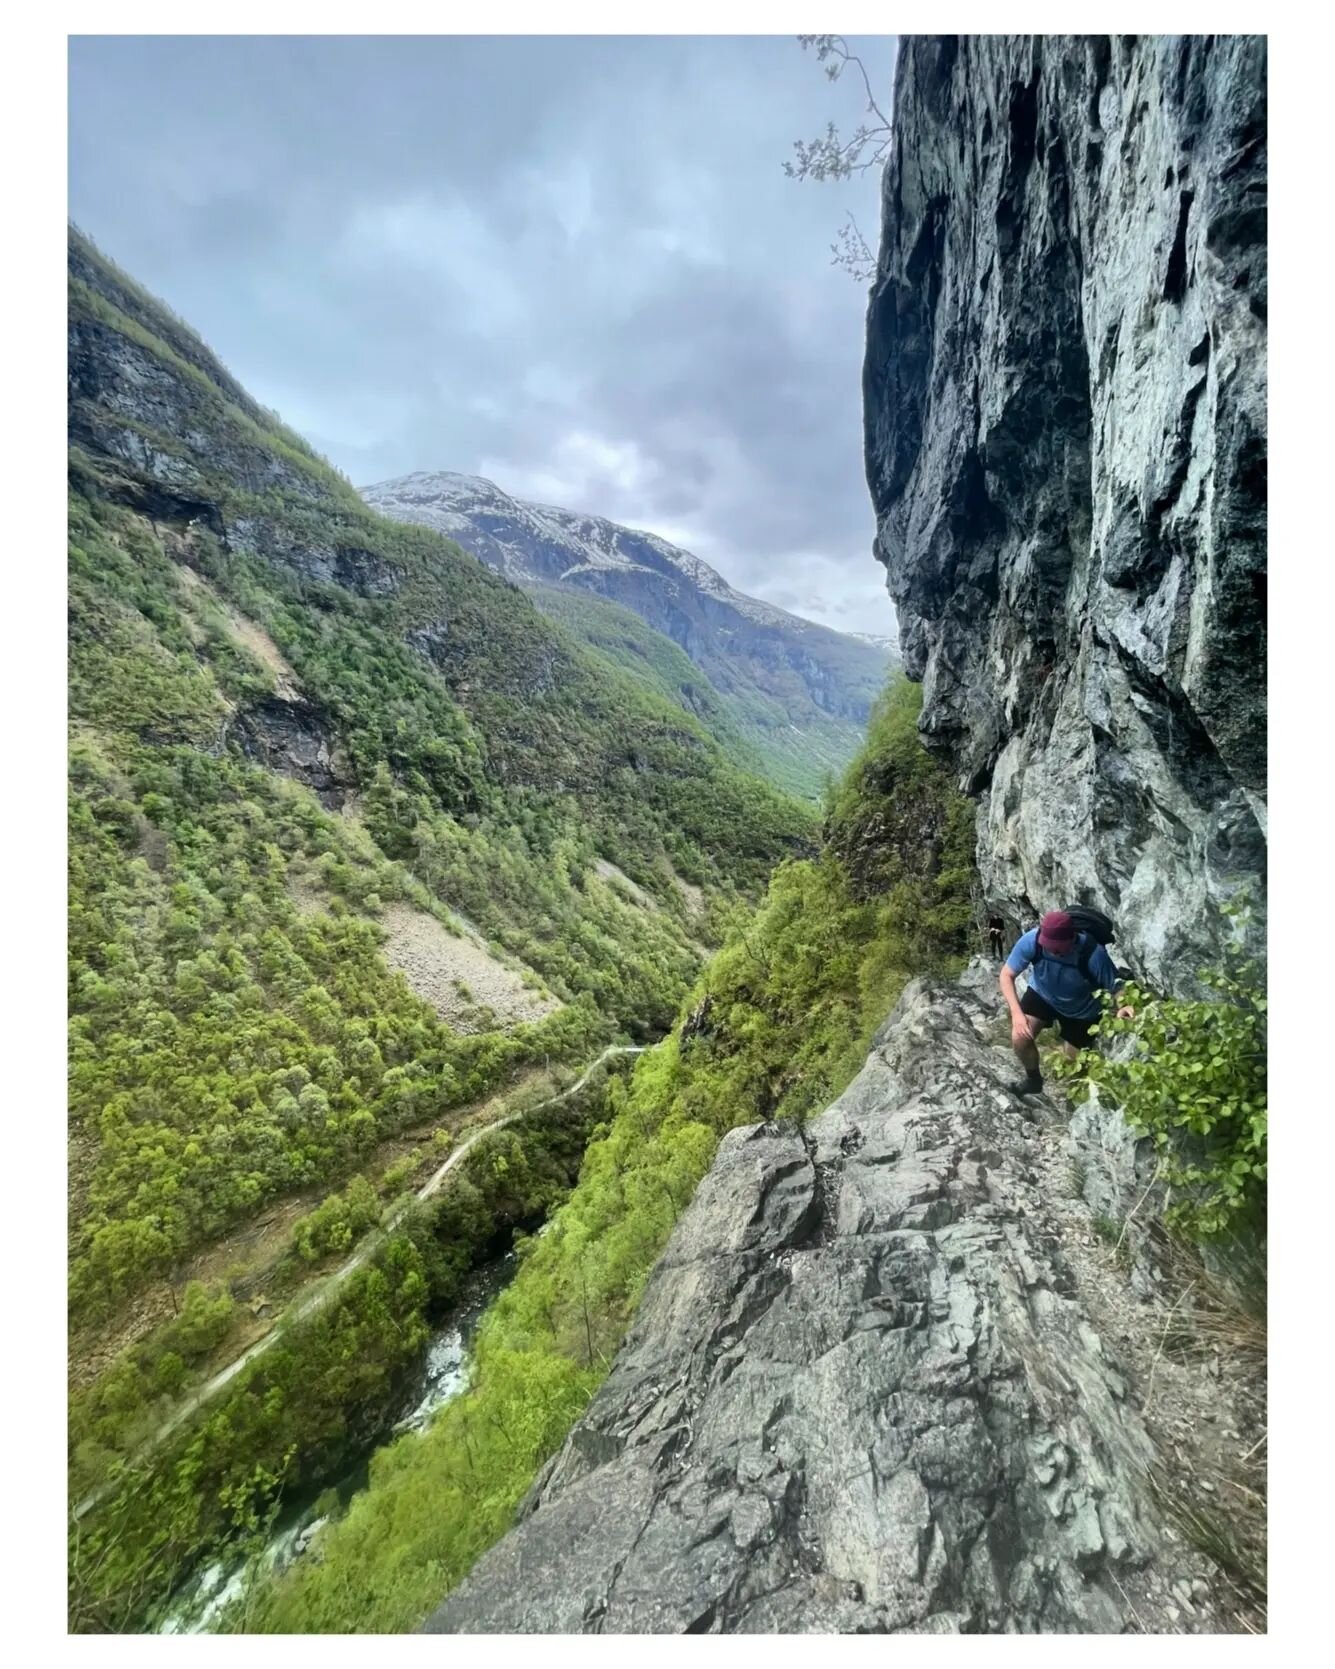 So this is how Norwegians hike...
@bulderogbrak